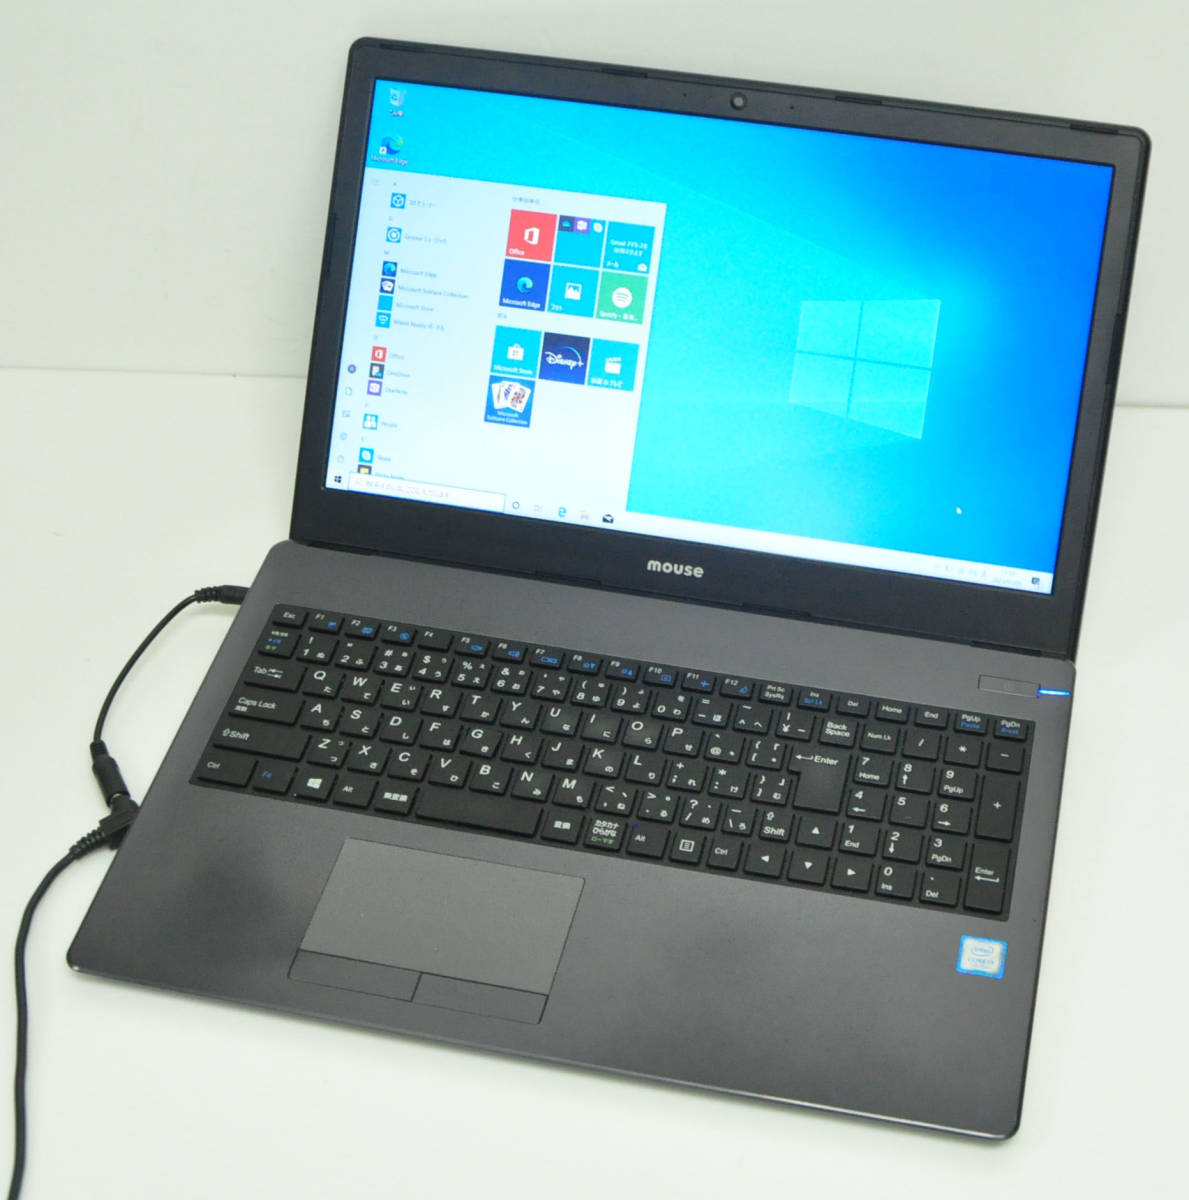 Mouse computer - Notebook - Windows - computer - Computer - bidJDM